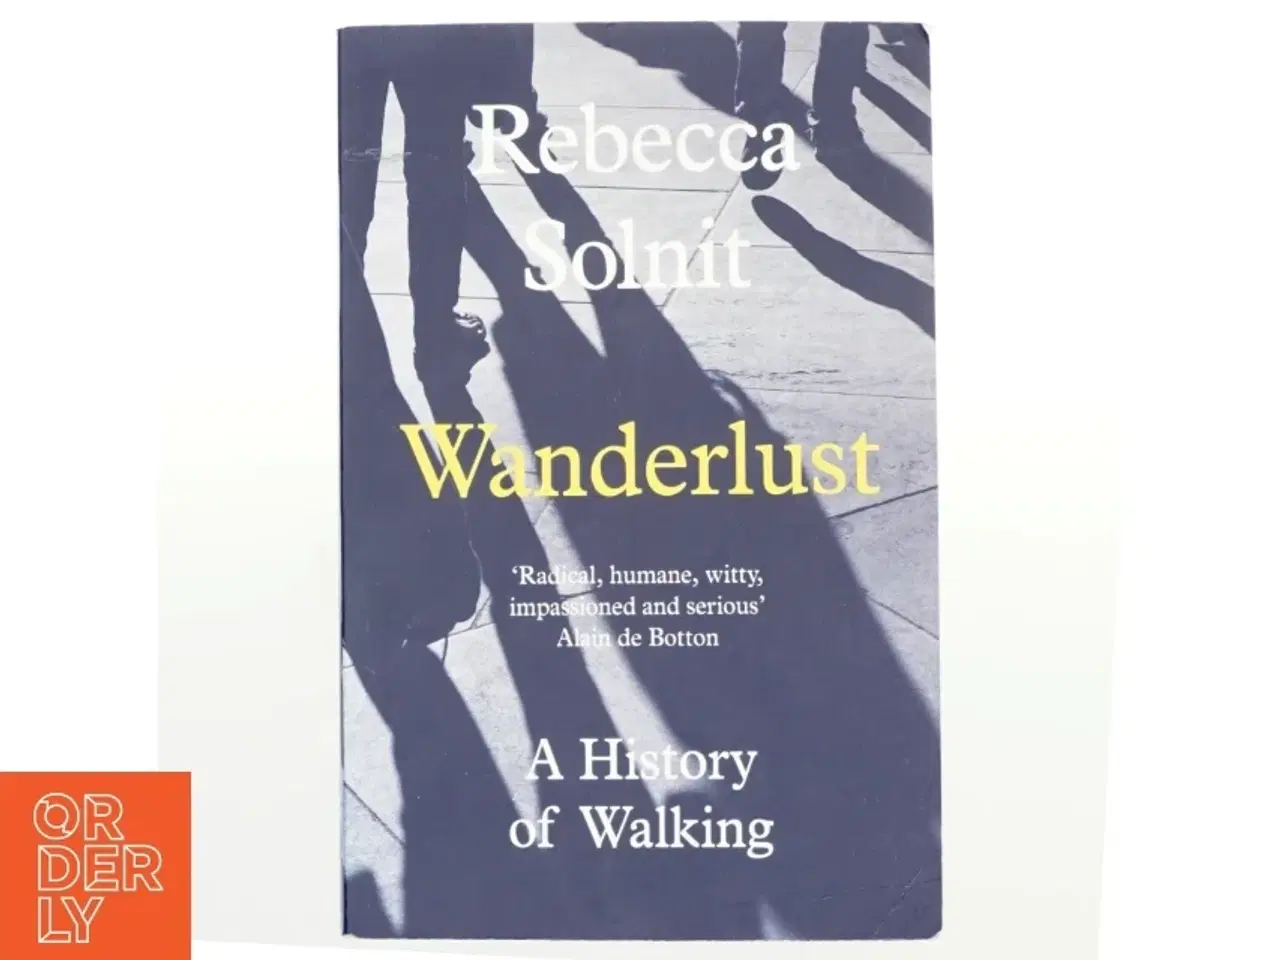 Billede 1 - Wanderlust : a history of walking af Rebecca Solnit (Bog)